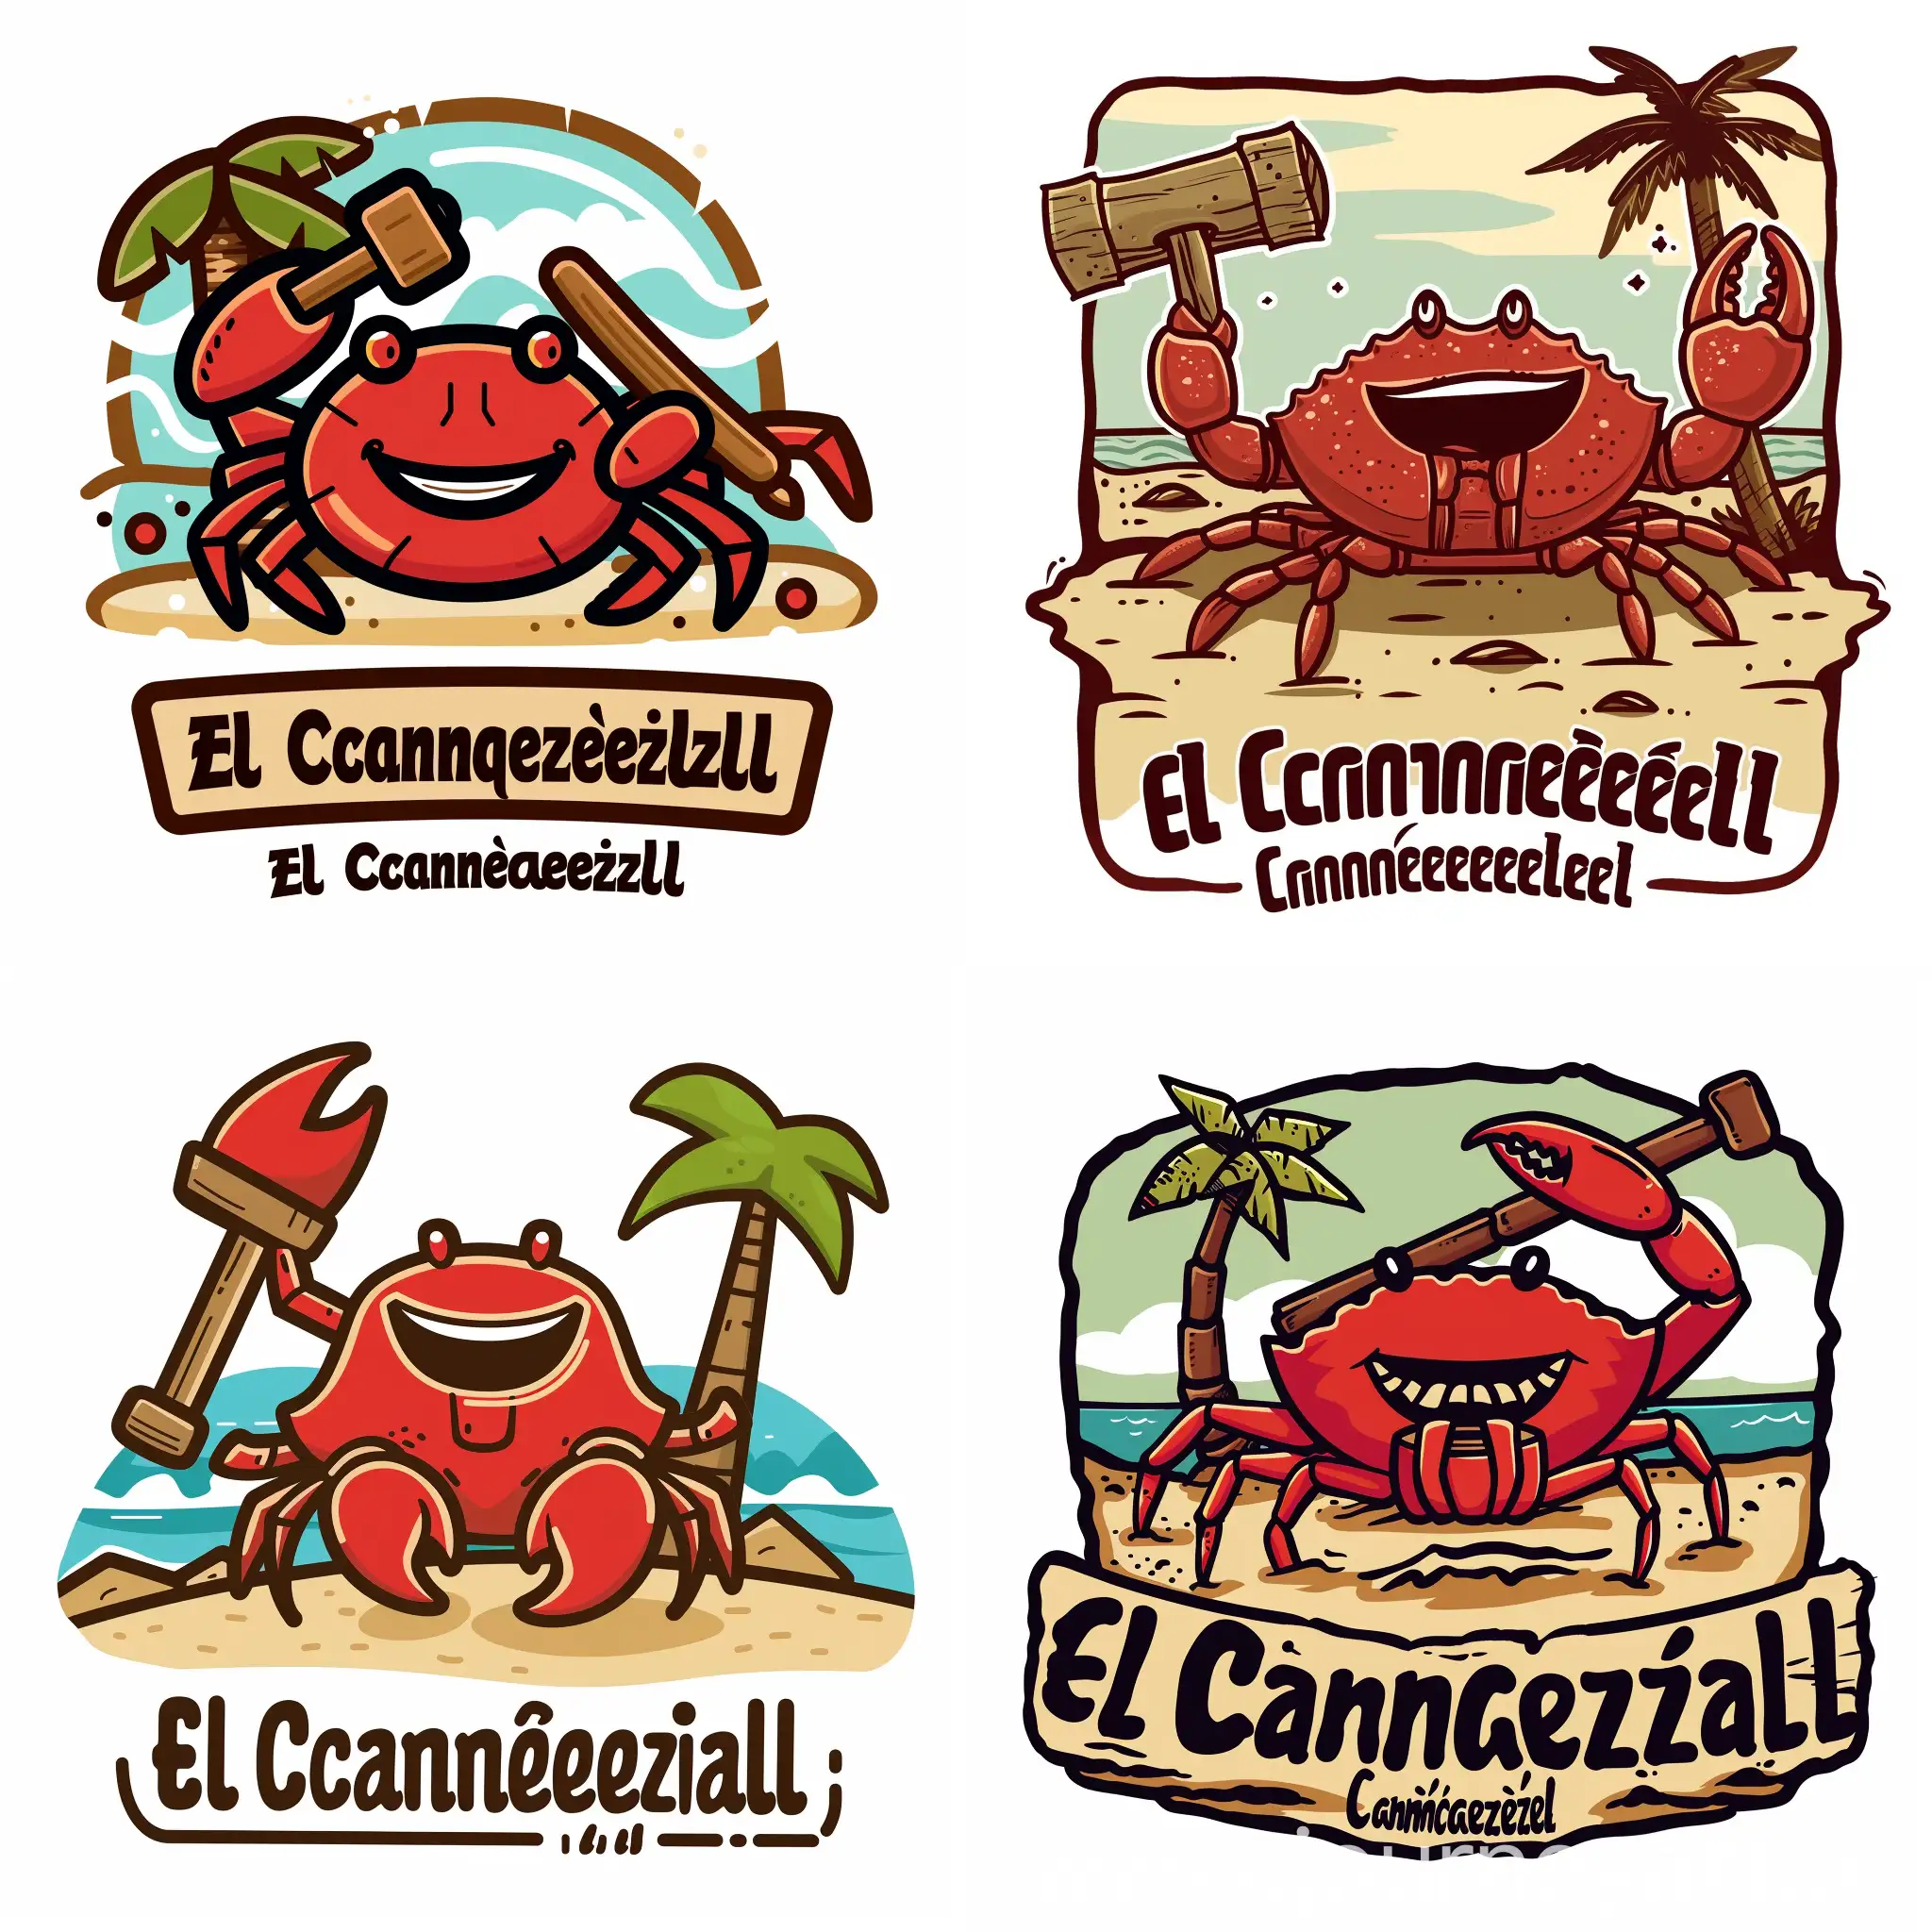 El logo presenta un cangrejo rojo sonriente sentado en una playa , con una palmera al fondo. El cangrejo sostiene un maso de madera en una tenaza, dando la impresión de estar trabajando o preparando alimentos. La expresión del cangrejo es amigable y acogedora, transmitiendo una sensación de bienvenida a los clientes. Debajo de la imagen, el texto "El Canguerejal" se presenta en una tipografía llamativa y amigable, que complementa la temática del restaurante.